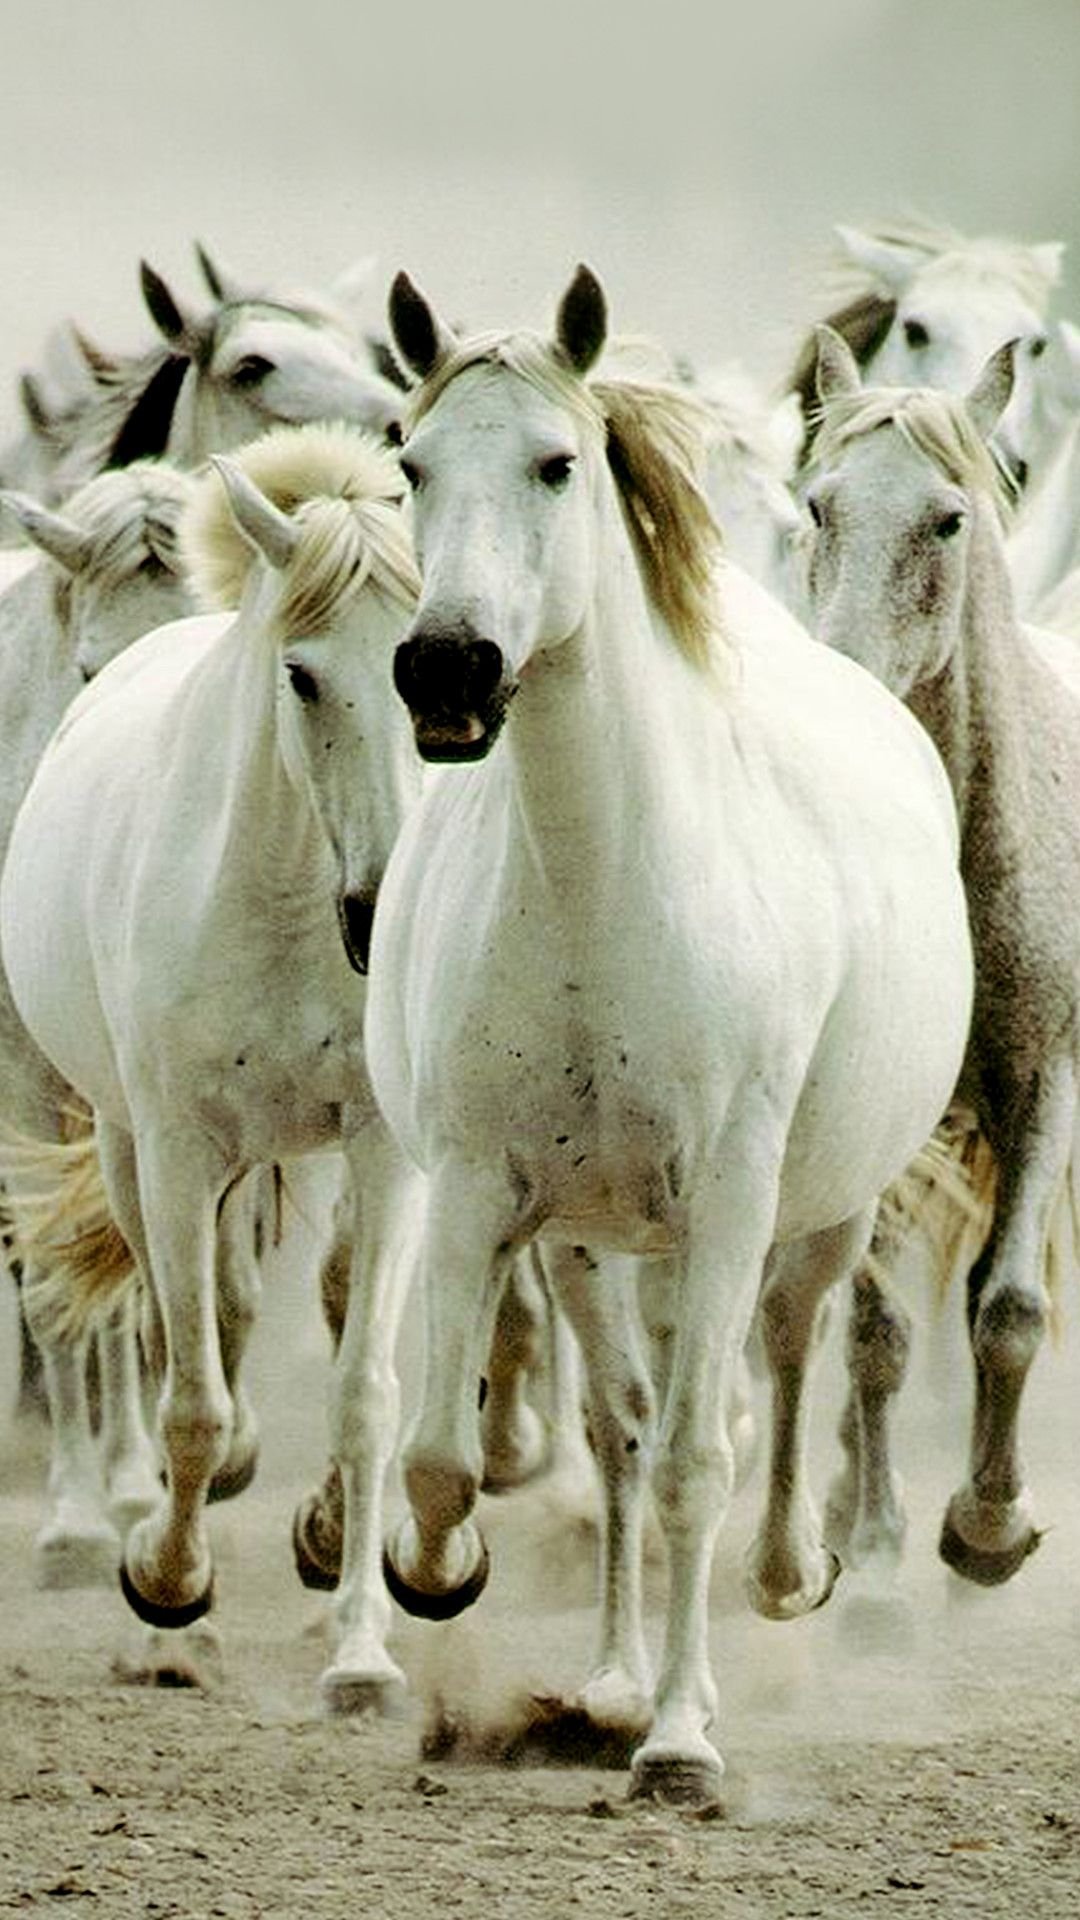 wild horses wallpaper hd